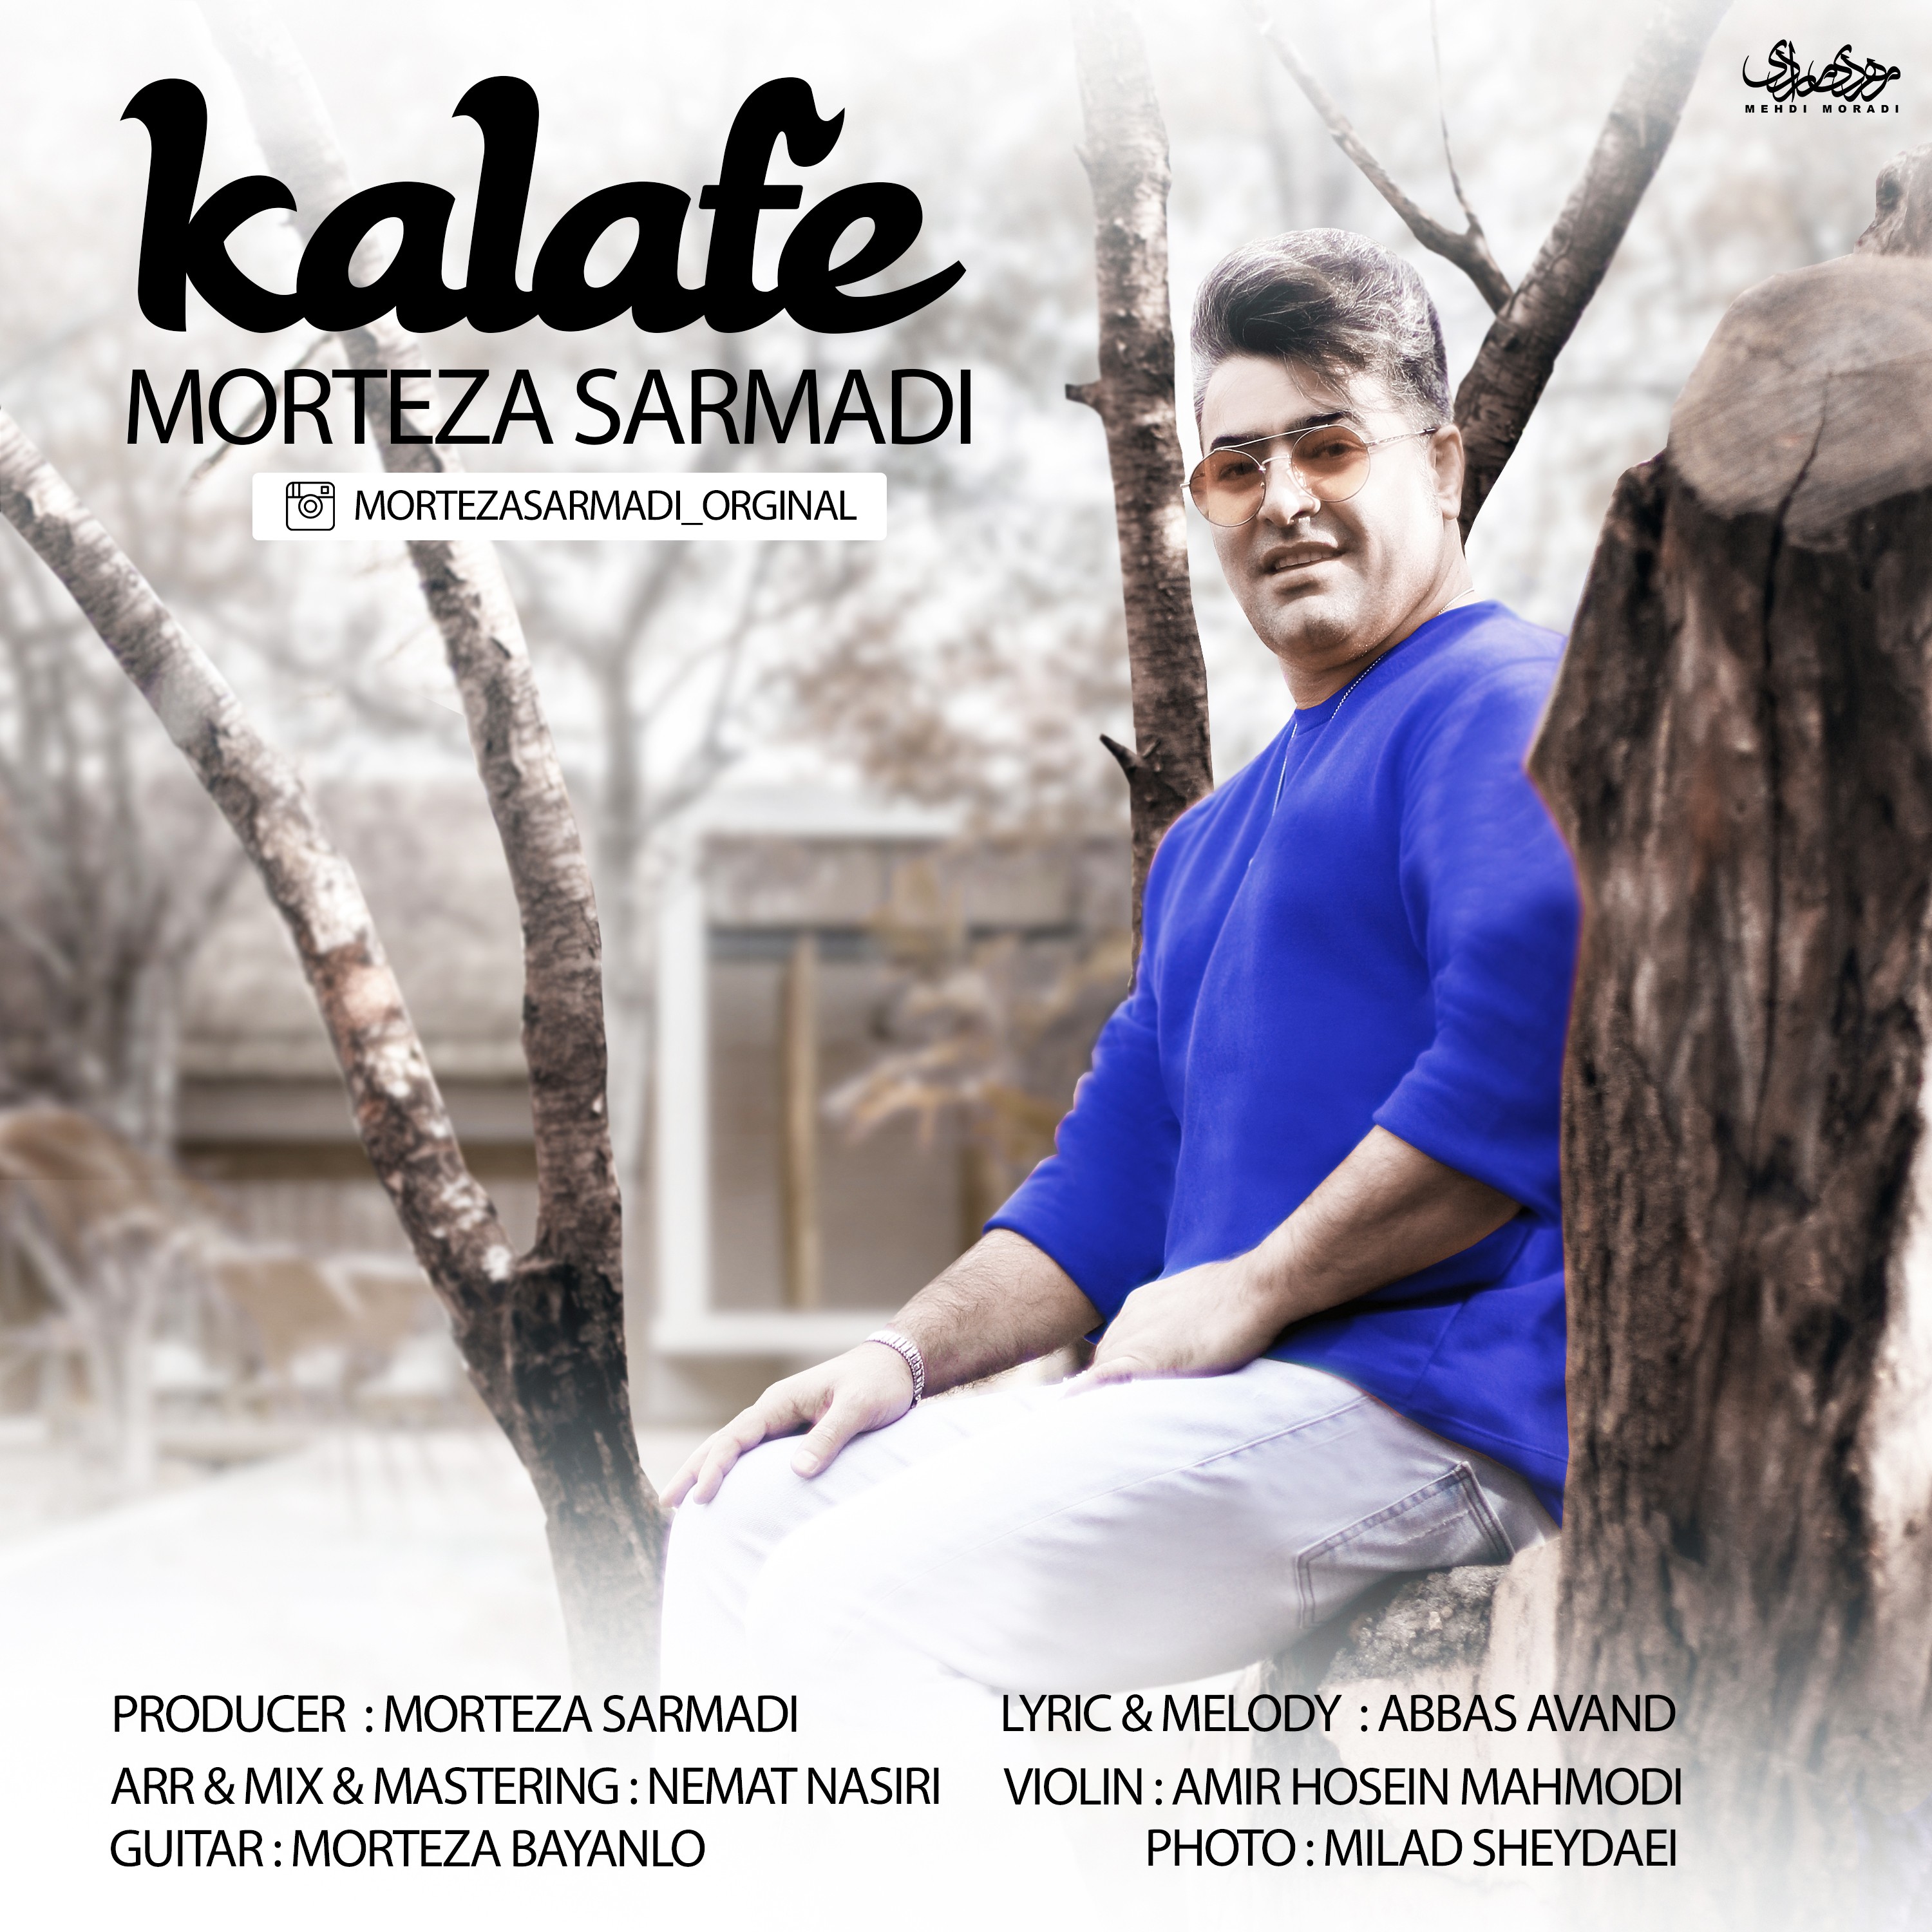  دانلود آهنگ جدید مرتضی سرمدی - کلافه | Download New Music By Morteza Sarmadi - Kalafeh